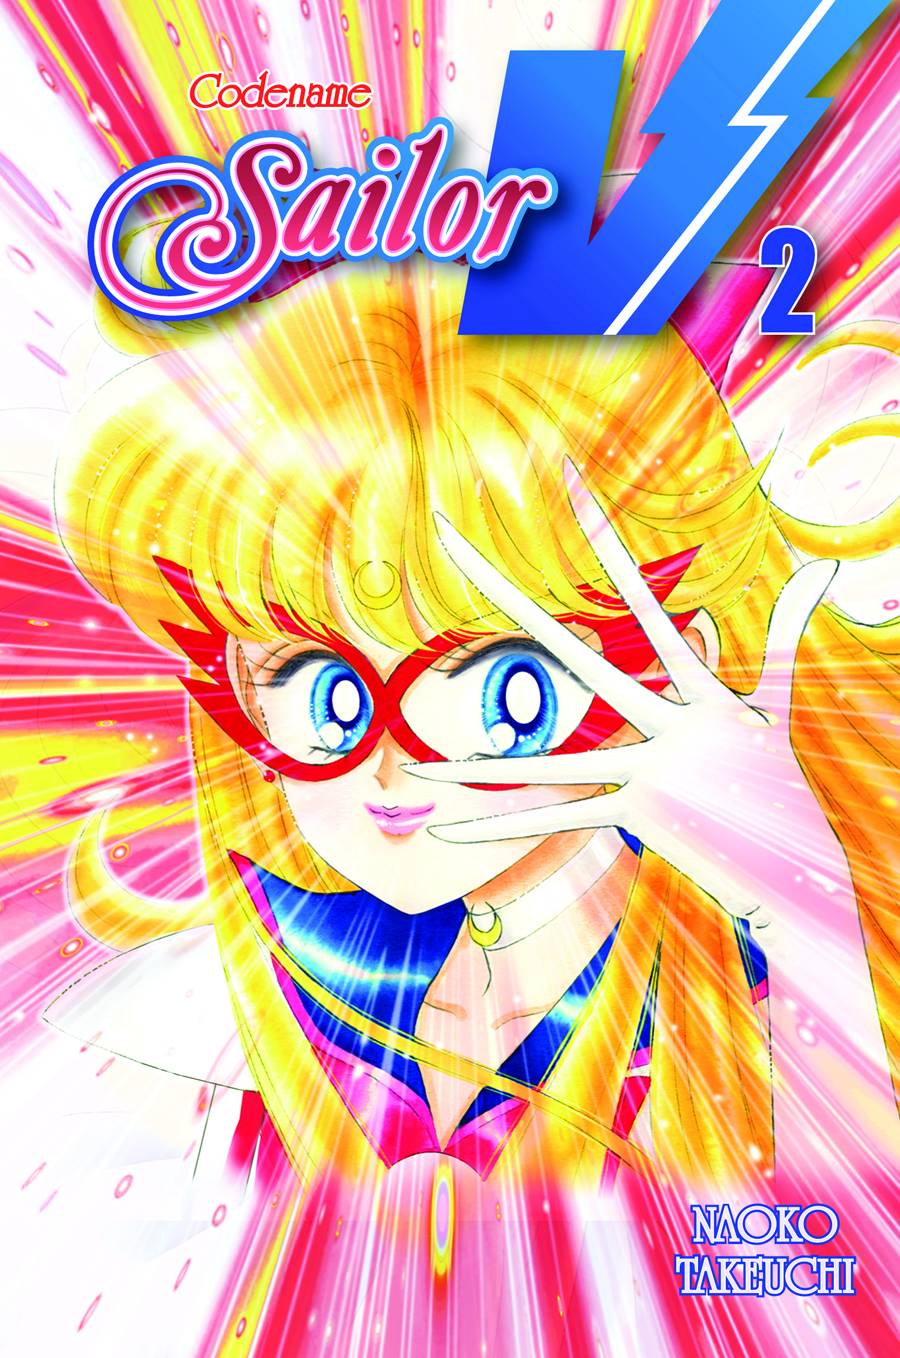 Codename Sailor V Manga Volume 2